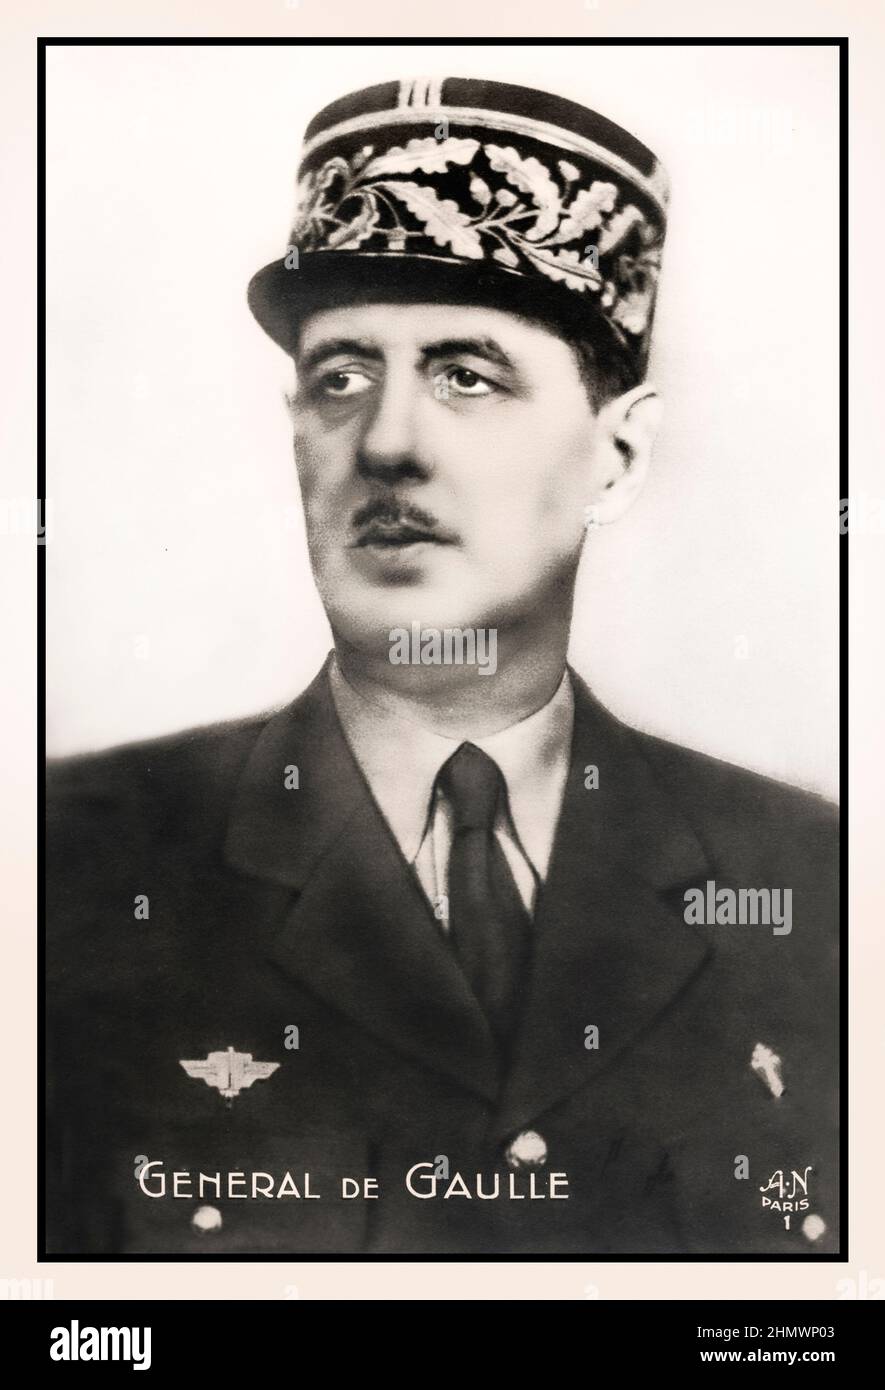 GENERAL de GAULLE Charles André Joseph Marie de Gaulle war ein französischer Armeeoffizier und Staatsmann, der im Zweiten Weltkrieg das Freie Frankreich gegen Nazi-Deutschland führte und von 1944 bis 1946 den Vorsitz der Provisorischen Regierung der Französischen Republik führte, um die Demokratie in Frankreich wiederherzustellen. Stockfoto